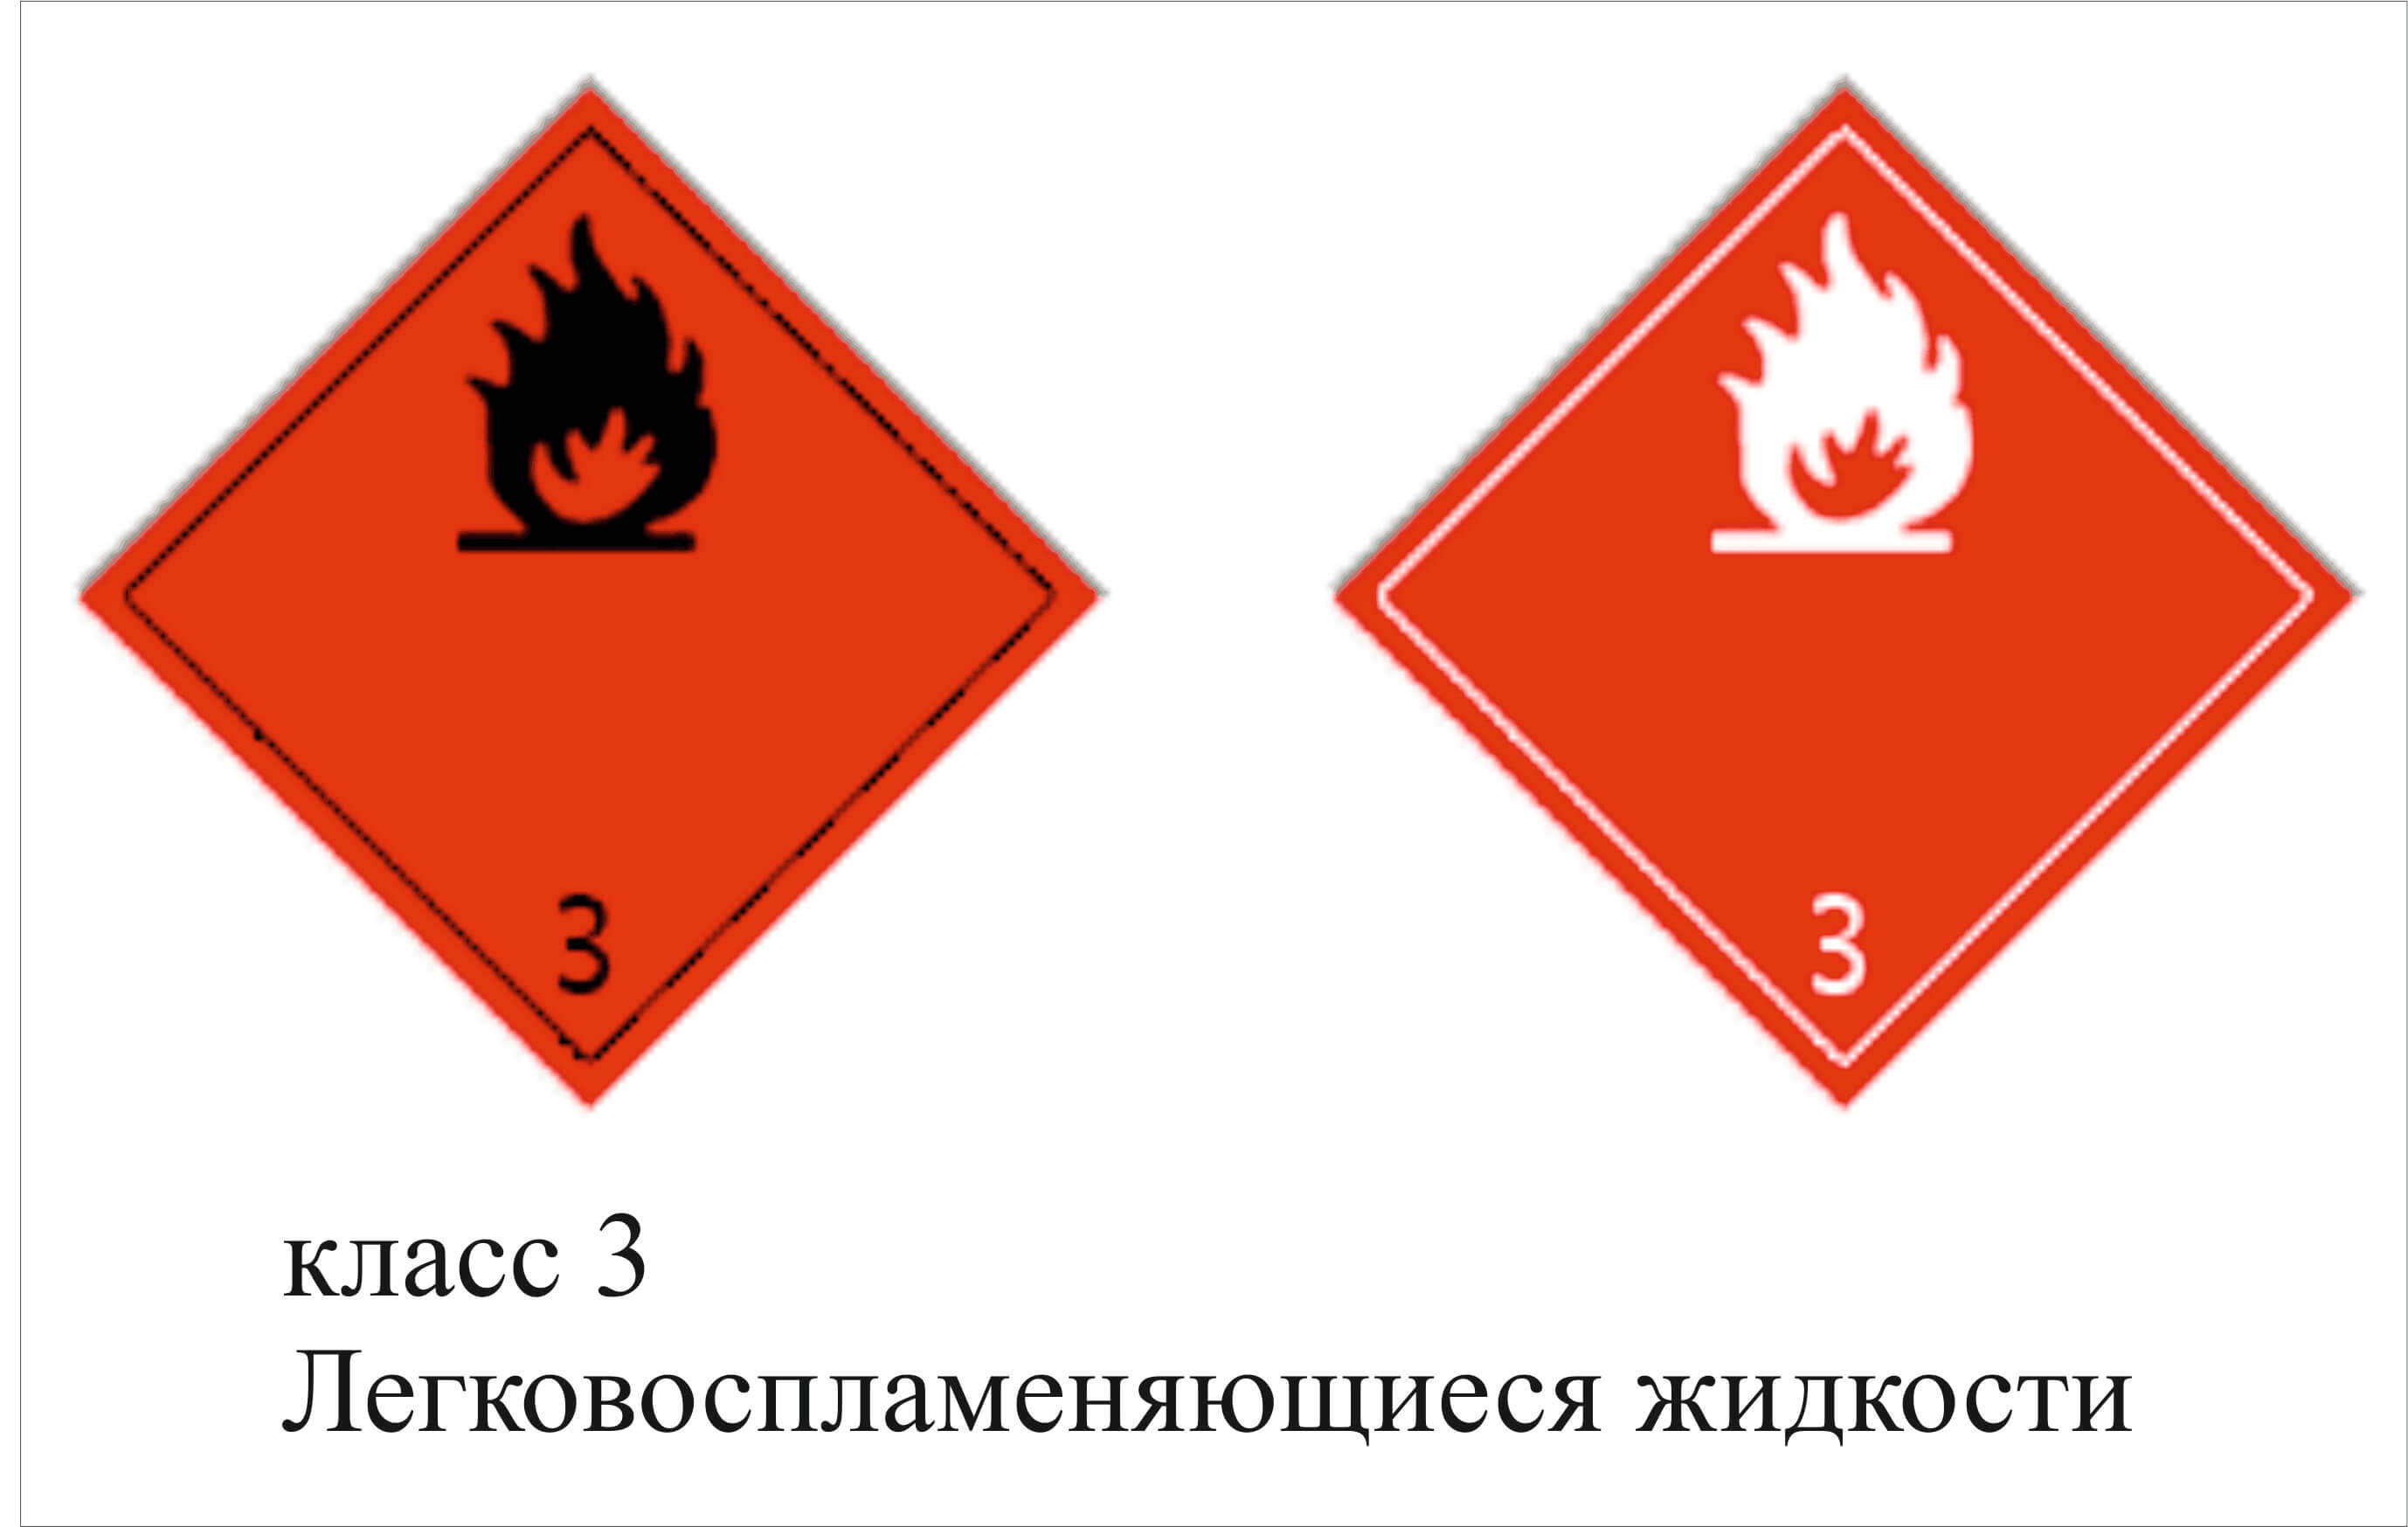 Опасные грузы газы. Знак опасности класс 3 ЛВЖ. Легковоспламеняющиеся жидкости 3 класс опасности. Класс 3- легковоспламеняющиеся жидкости ( ЛВЖ);. Знак 3 класс опасности легковоспламеняющиеся жидкости.